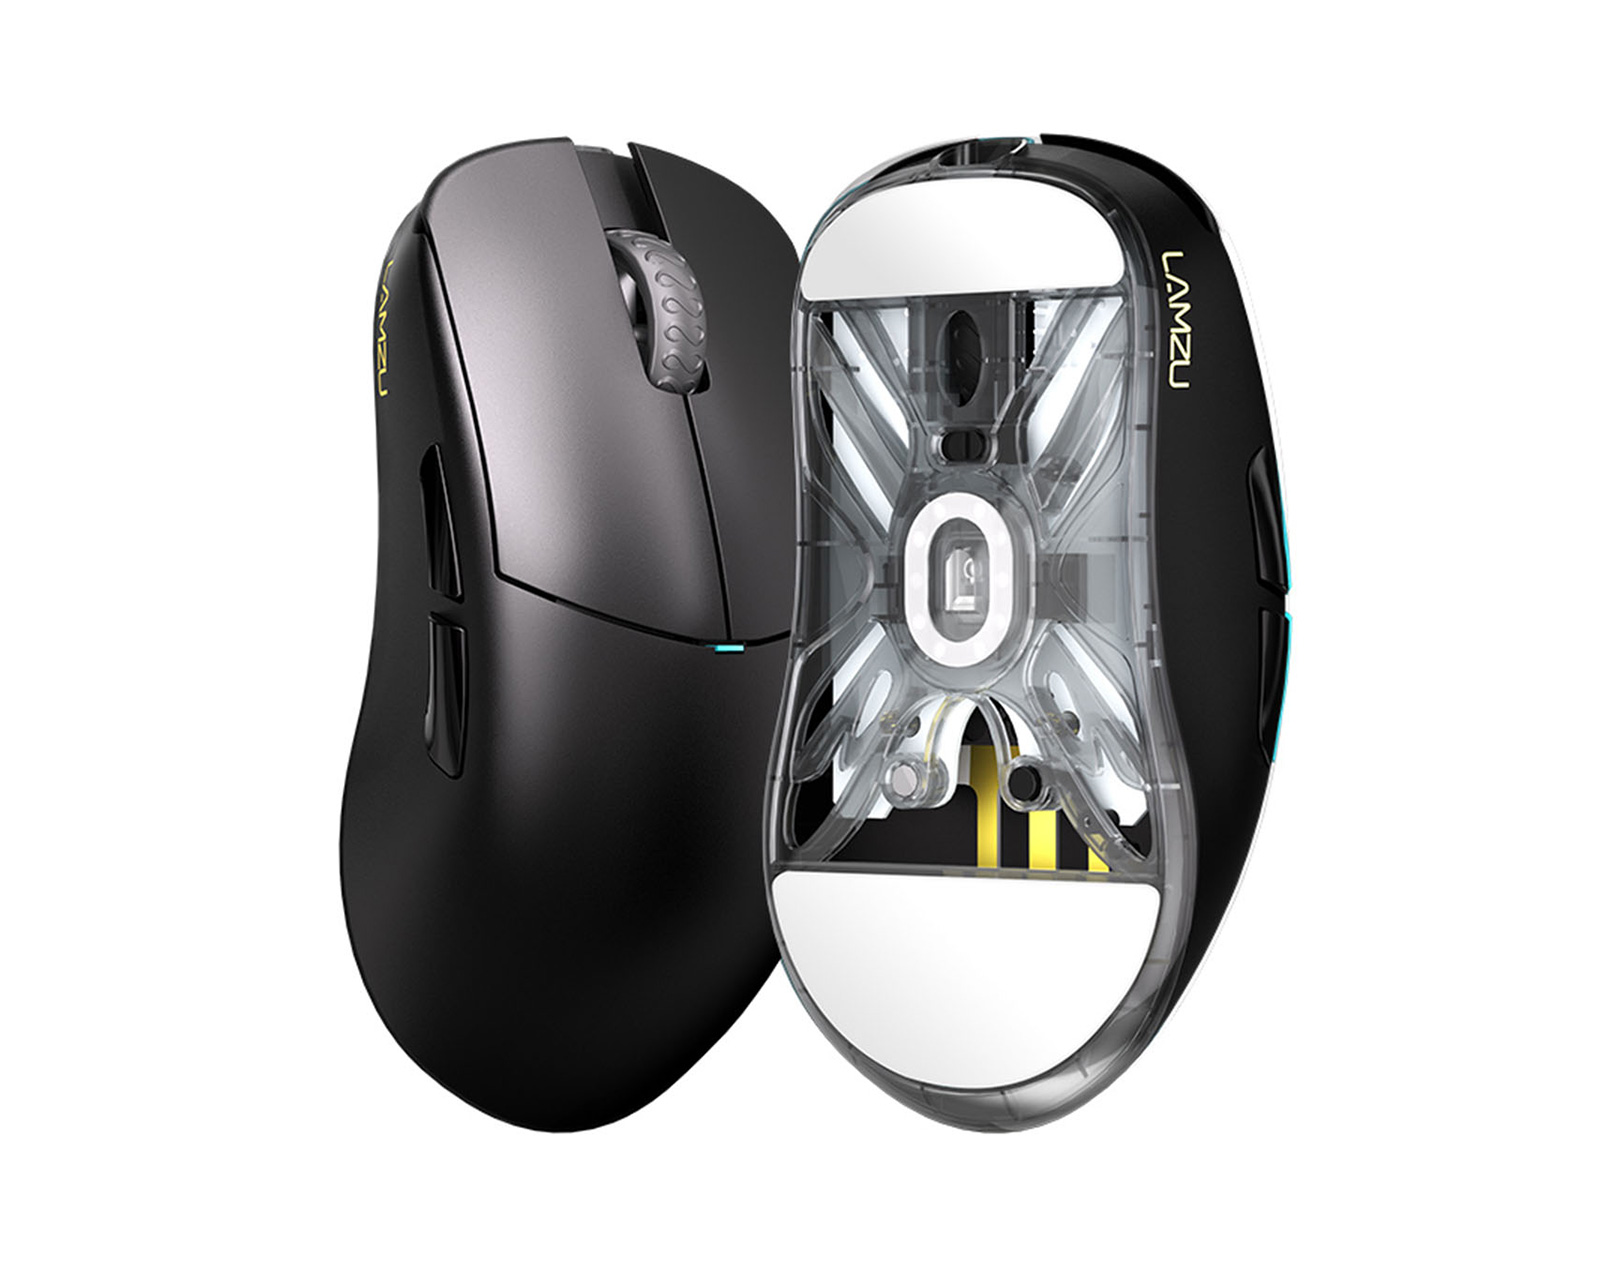 Lamzu Atlantis OG V2 Wireless Superlight Gaming Mouse - Black